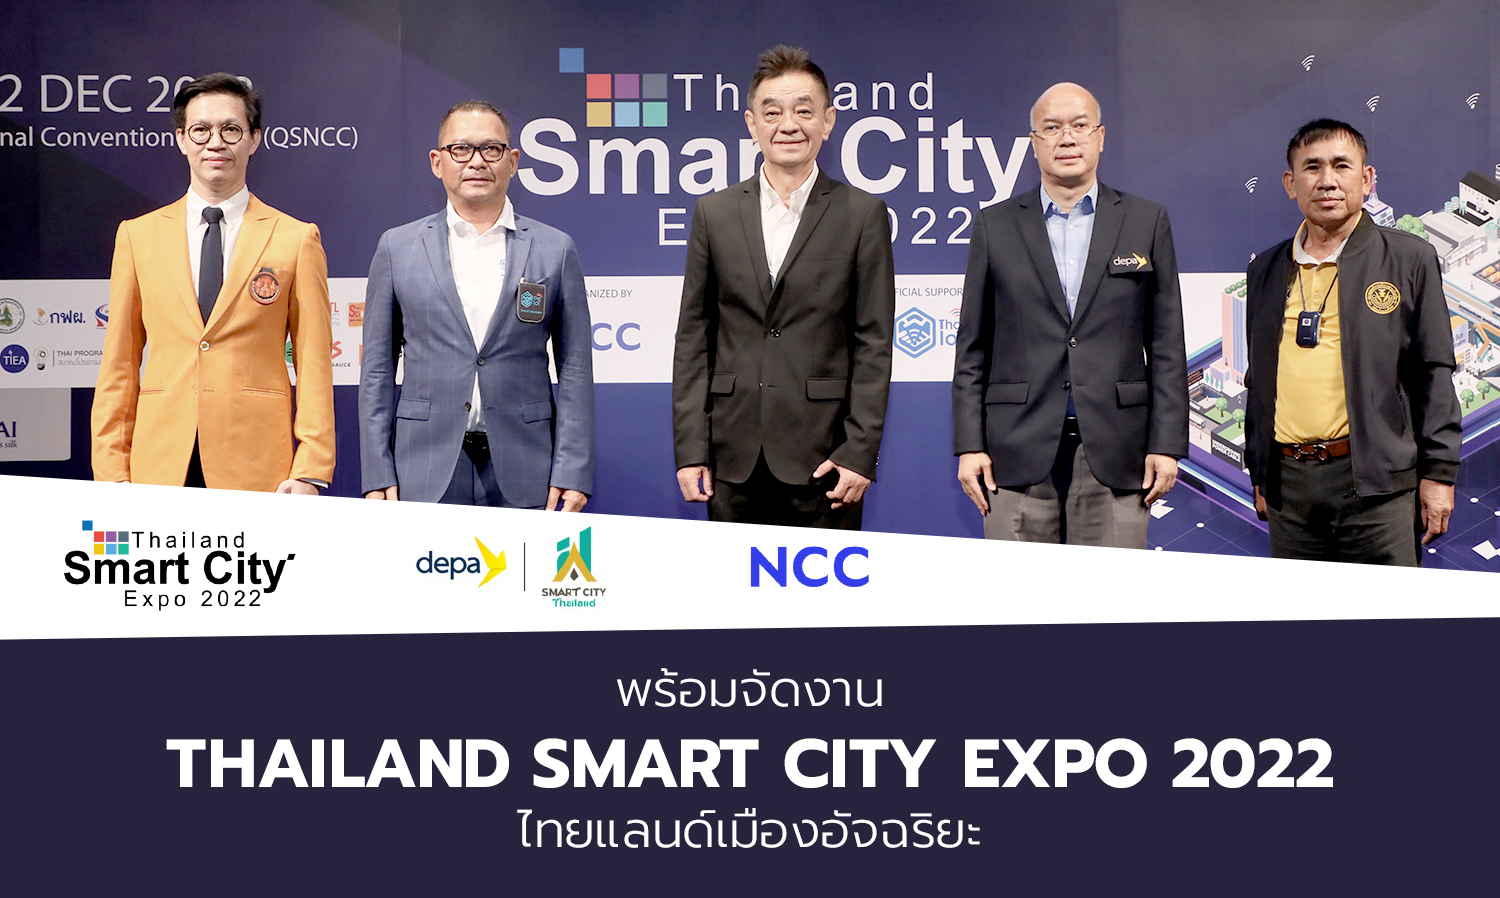 พร้อมจัดงาน Thailand Smart City Expo 2022 ไทยแลนด์เมืองอัจฉริยะ